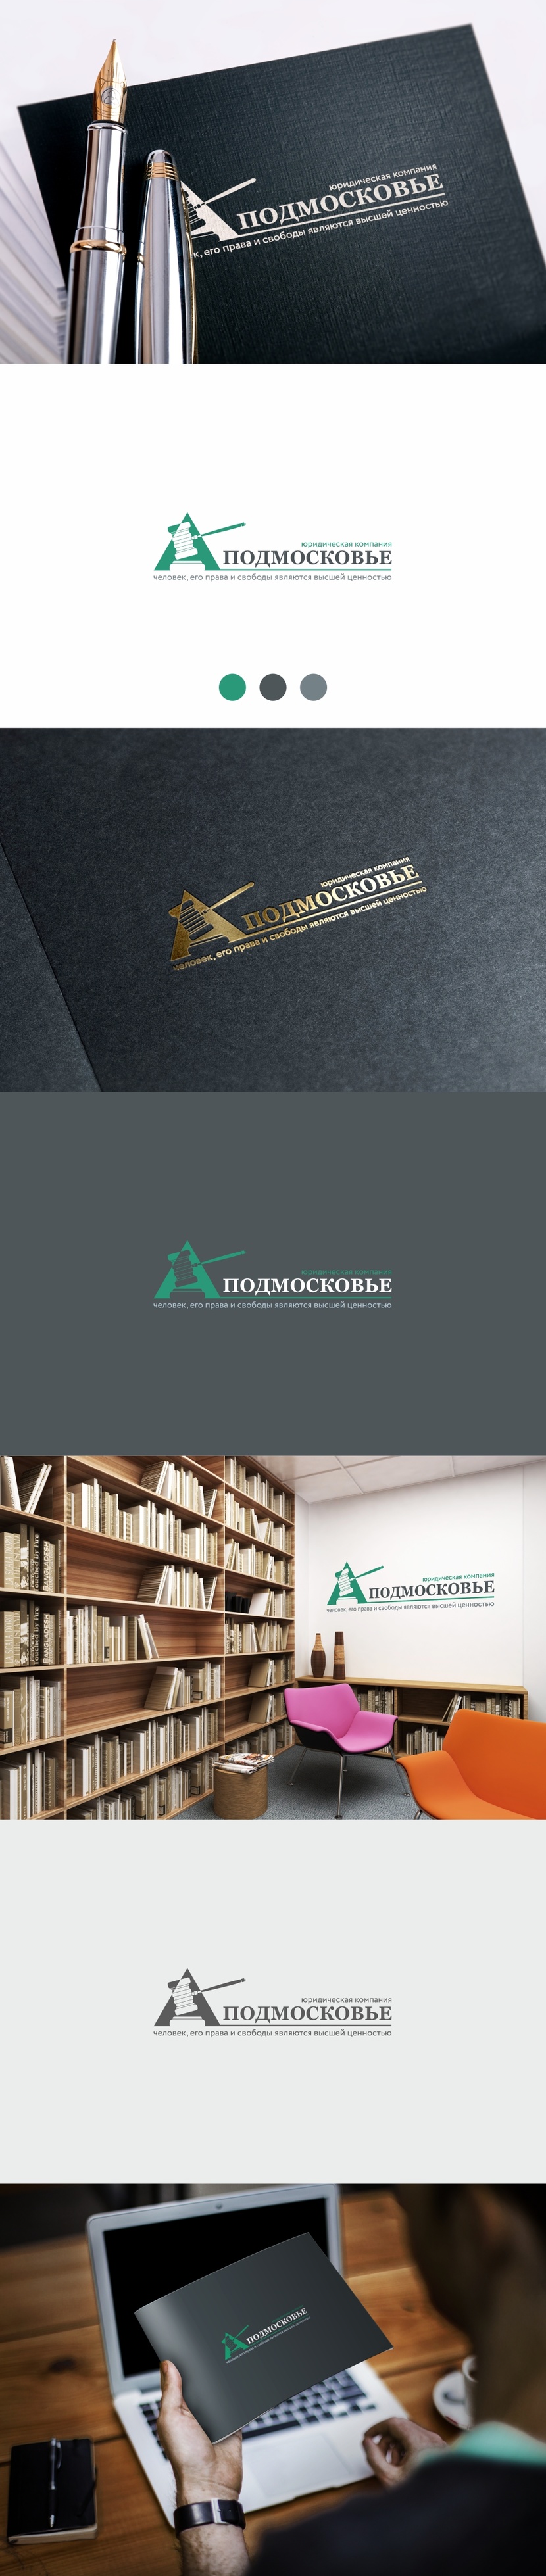 Фирменный стиль и логотип Юридической компании «Подмосковье»